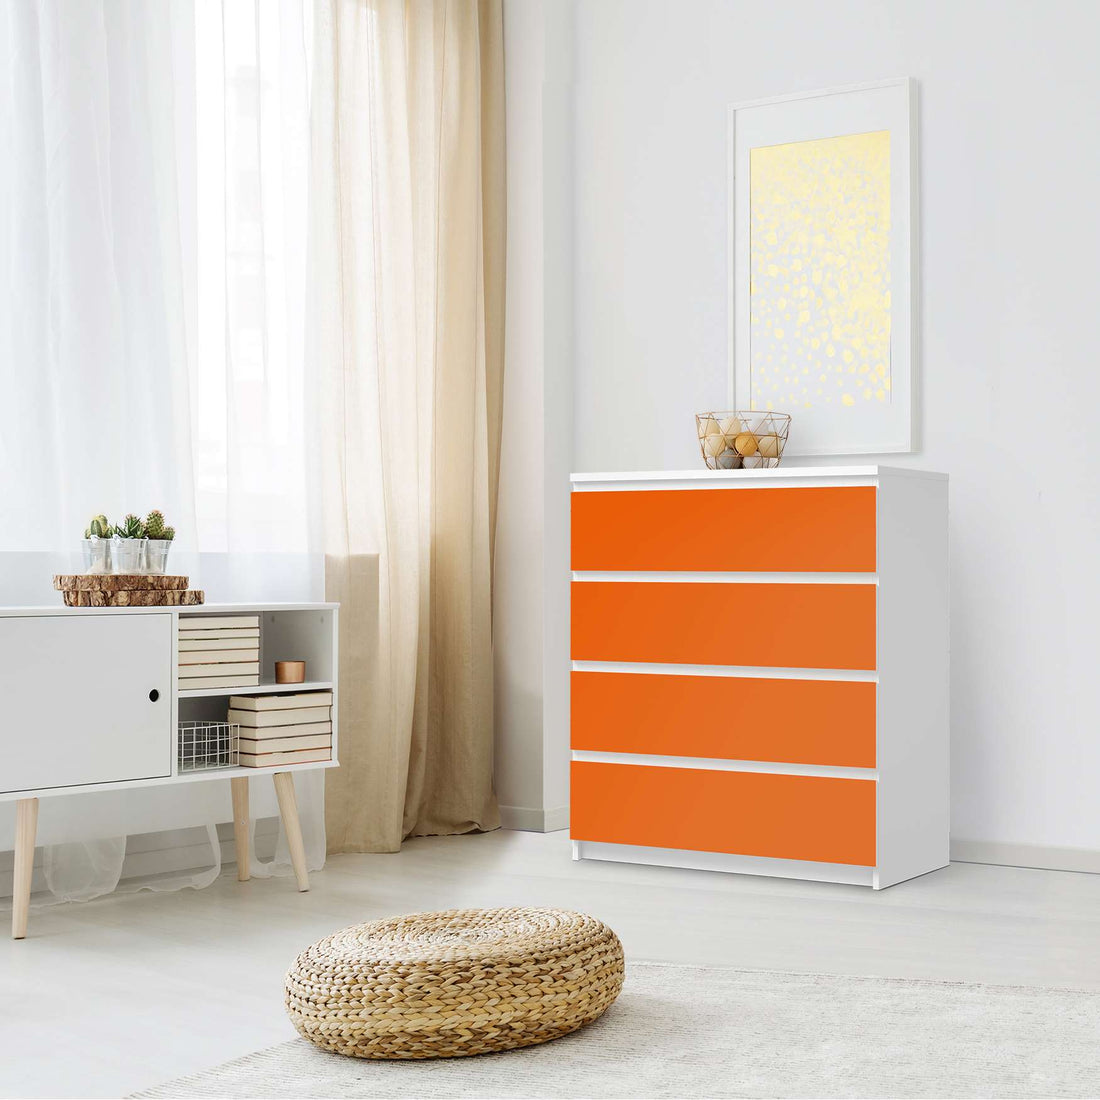 Folie für Möbel Orange Dark - IKEA Malm Kommode 4 Schubladen - Schlafzimmer